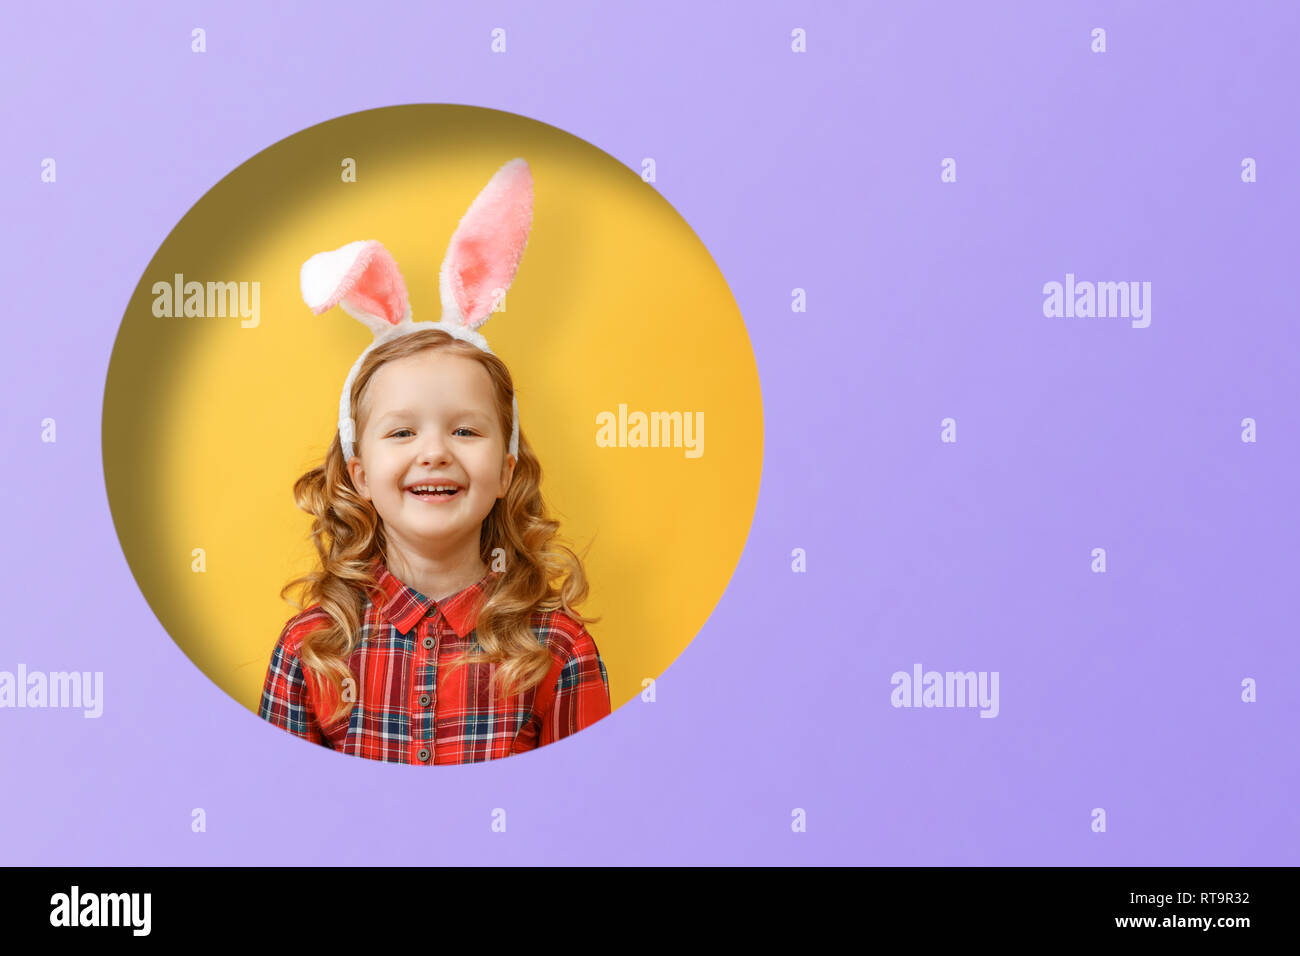 Retrato de una linda niña con orejas de conejo. Felices pascuas. Niño en un agujero redondo en el círculo de color amarillo y violeta fondos Foto de stock